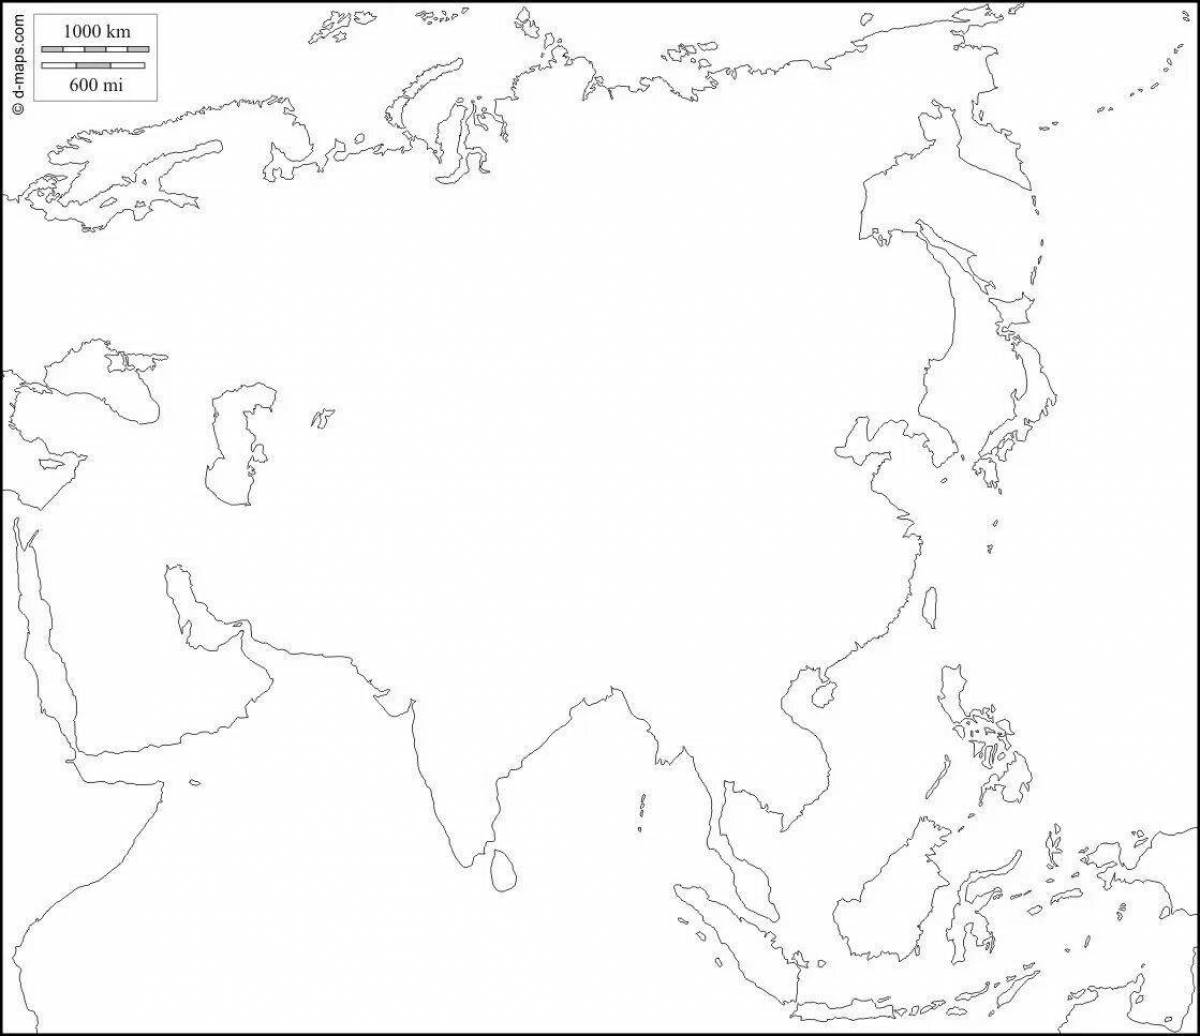 Белая пустая карта. Карта Азии без границ для маппинга. Карта Азии белая без границ. Карта Евразии пустая. Политическая карта Азии пустая.